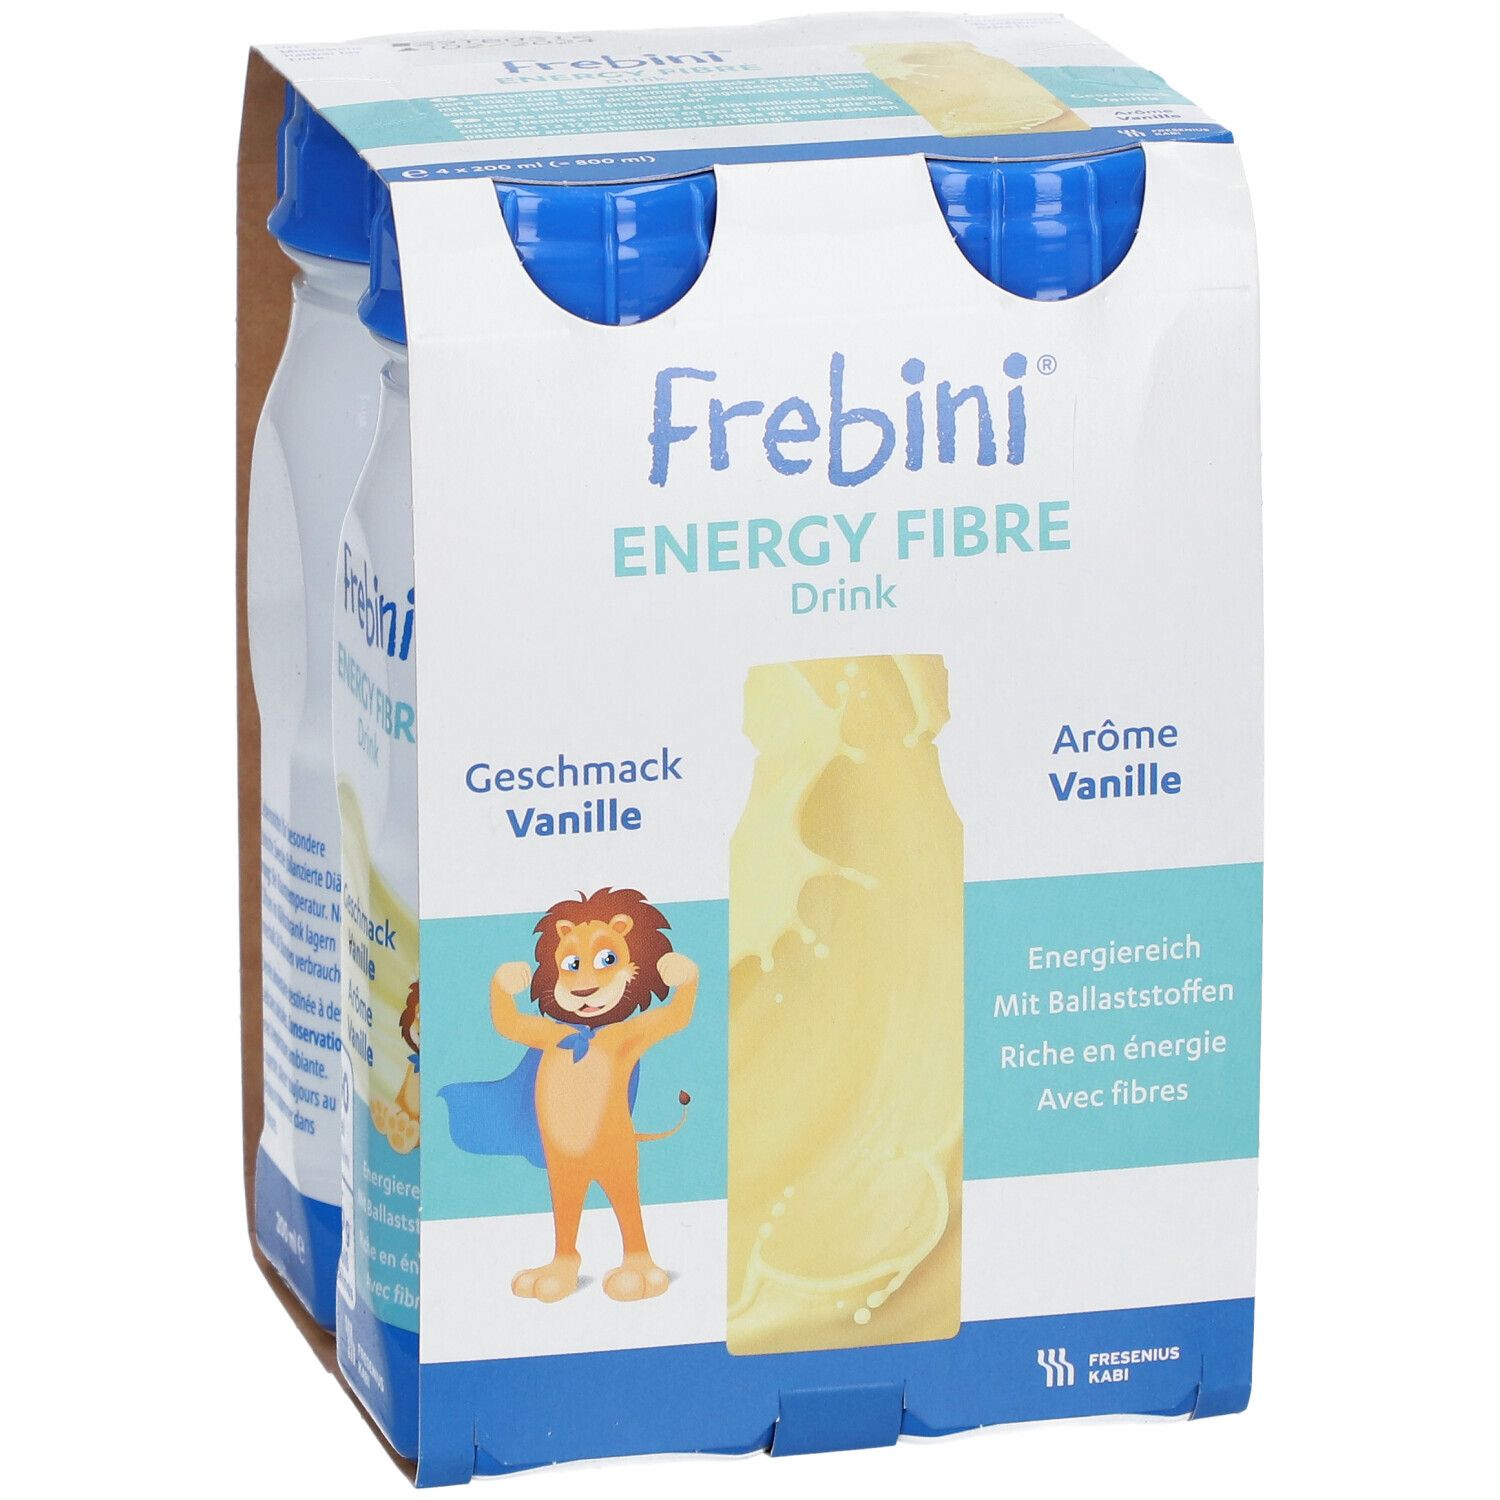 Frebini Energy Fibre Trinknahrung Vanille | Aufbaunahrung mit Vitaminen für Kinder